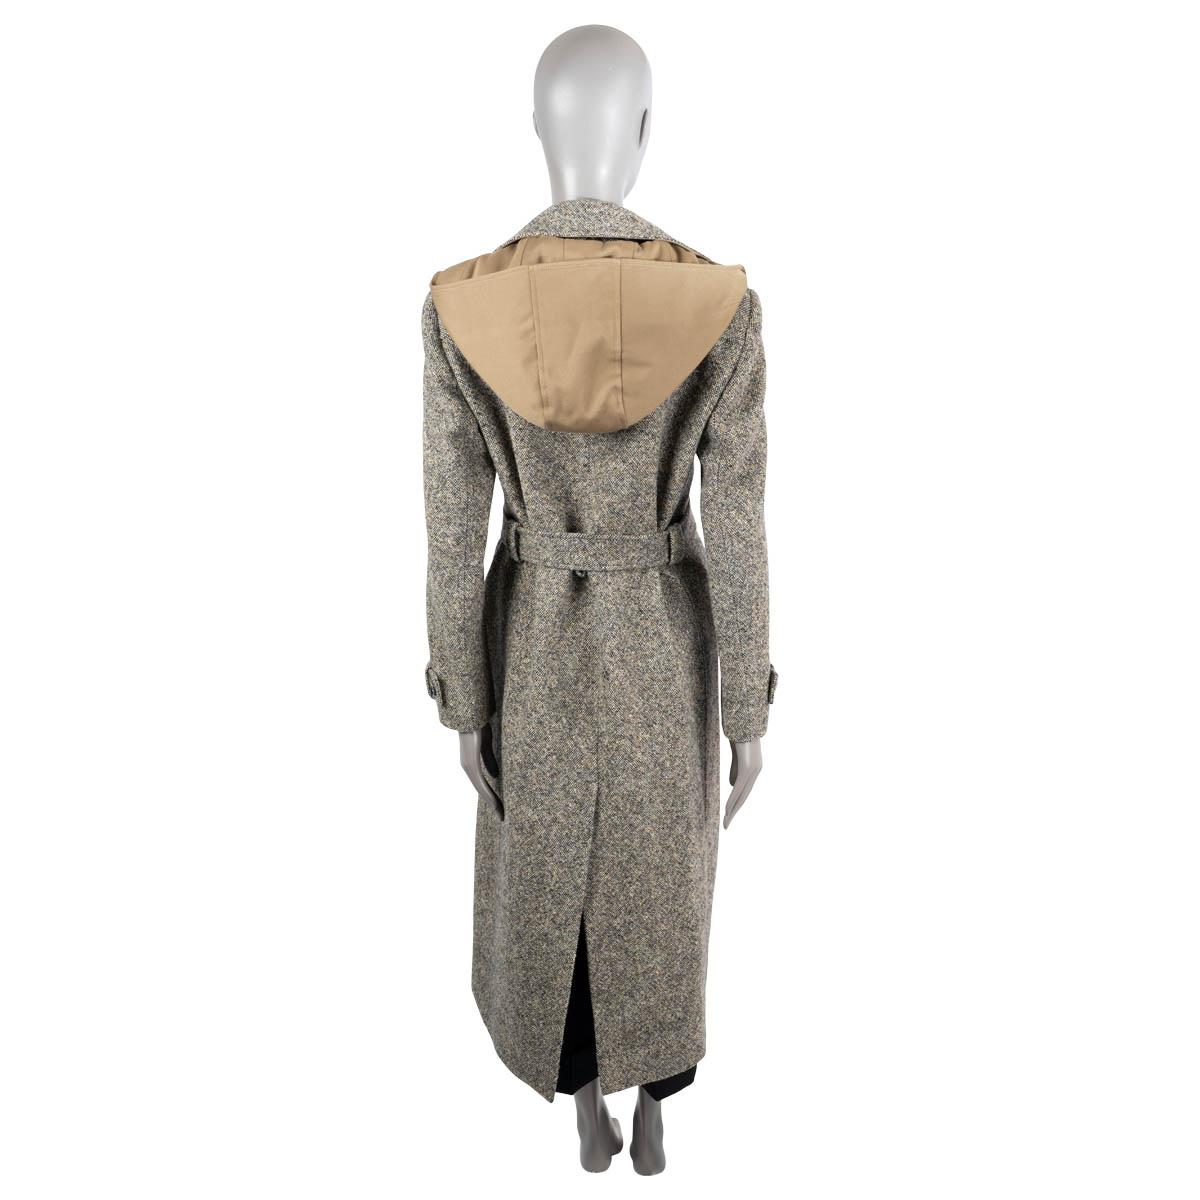 Women's CHLOE Mainly Brow wool 2021 BELTED HOODE TWEED Coat Jacket 38 S